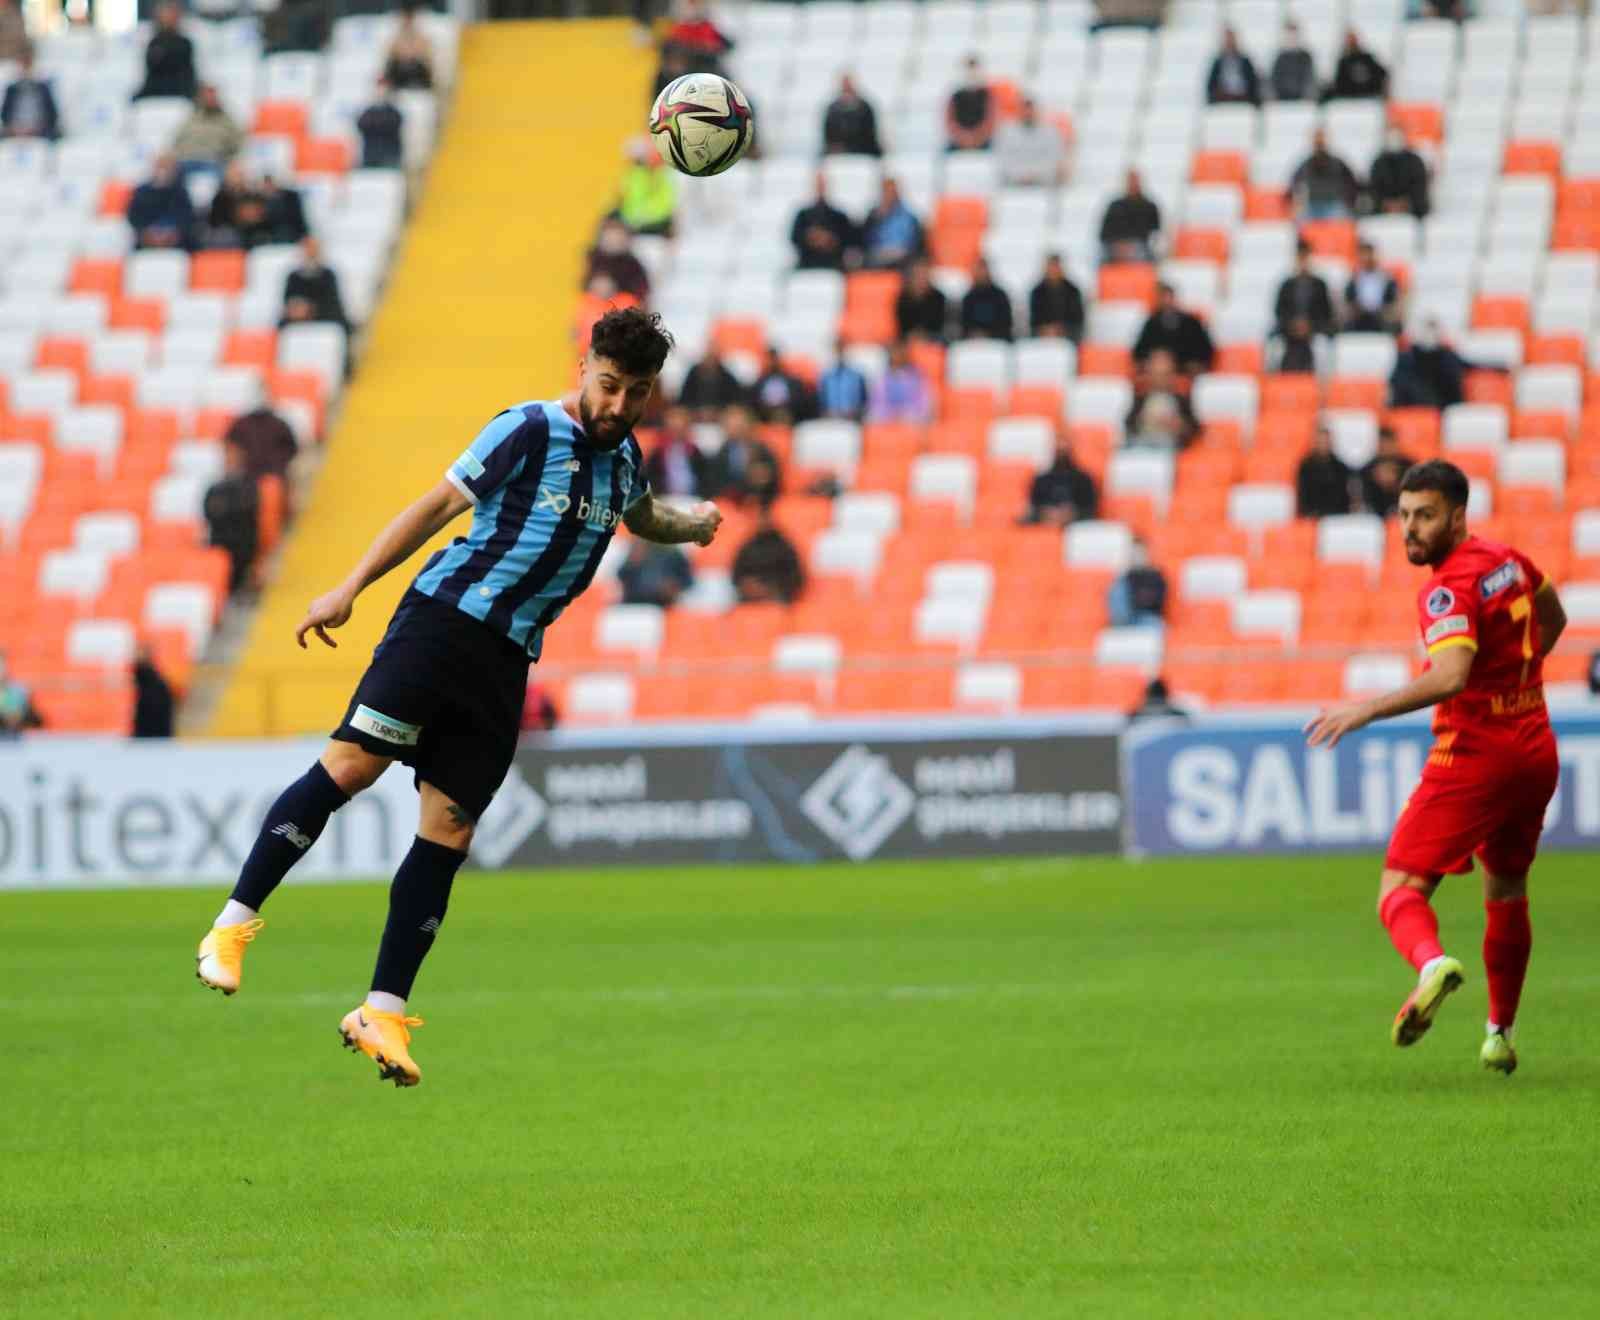 Spor Toto Süper Lig: Adana Demirspor: 0 - Kayserispor: 0 (Maç devam ediyor) #adana